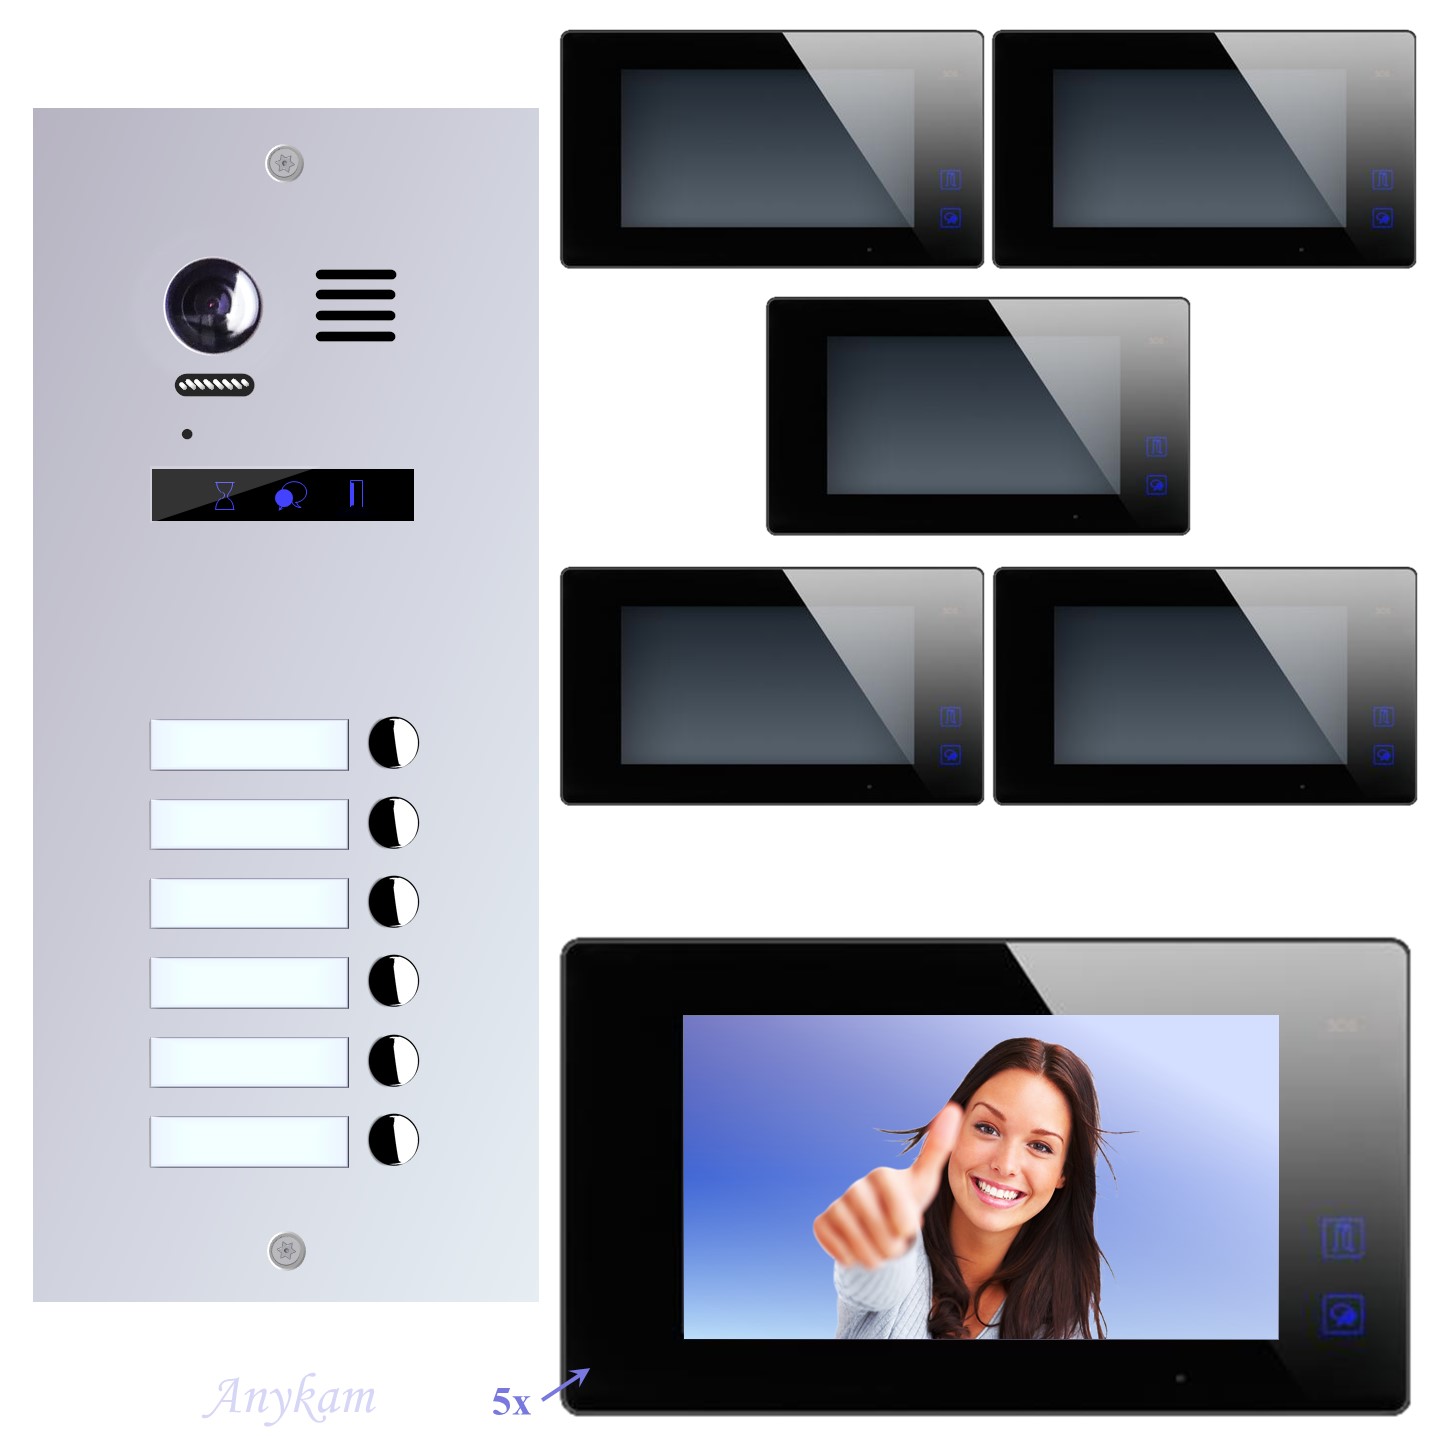 Design Farb Video Türsprechanlage für Mehrfamilienhaus Videosprechanlage Gegensprechanlage Klingelanlage Interfon mit 2-Draht Technik